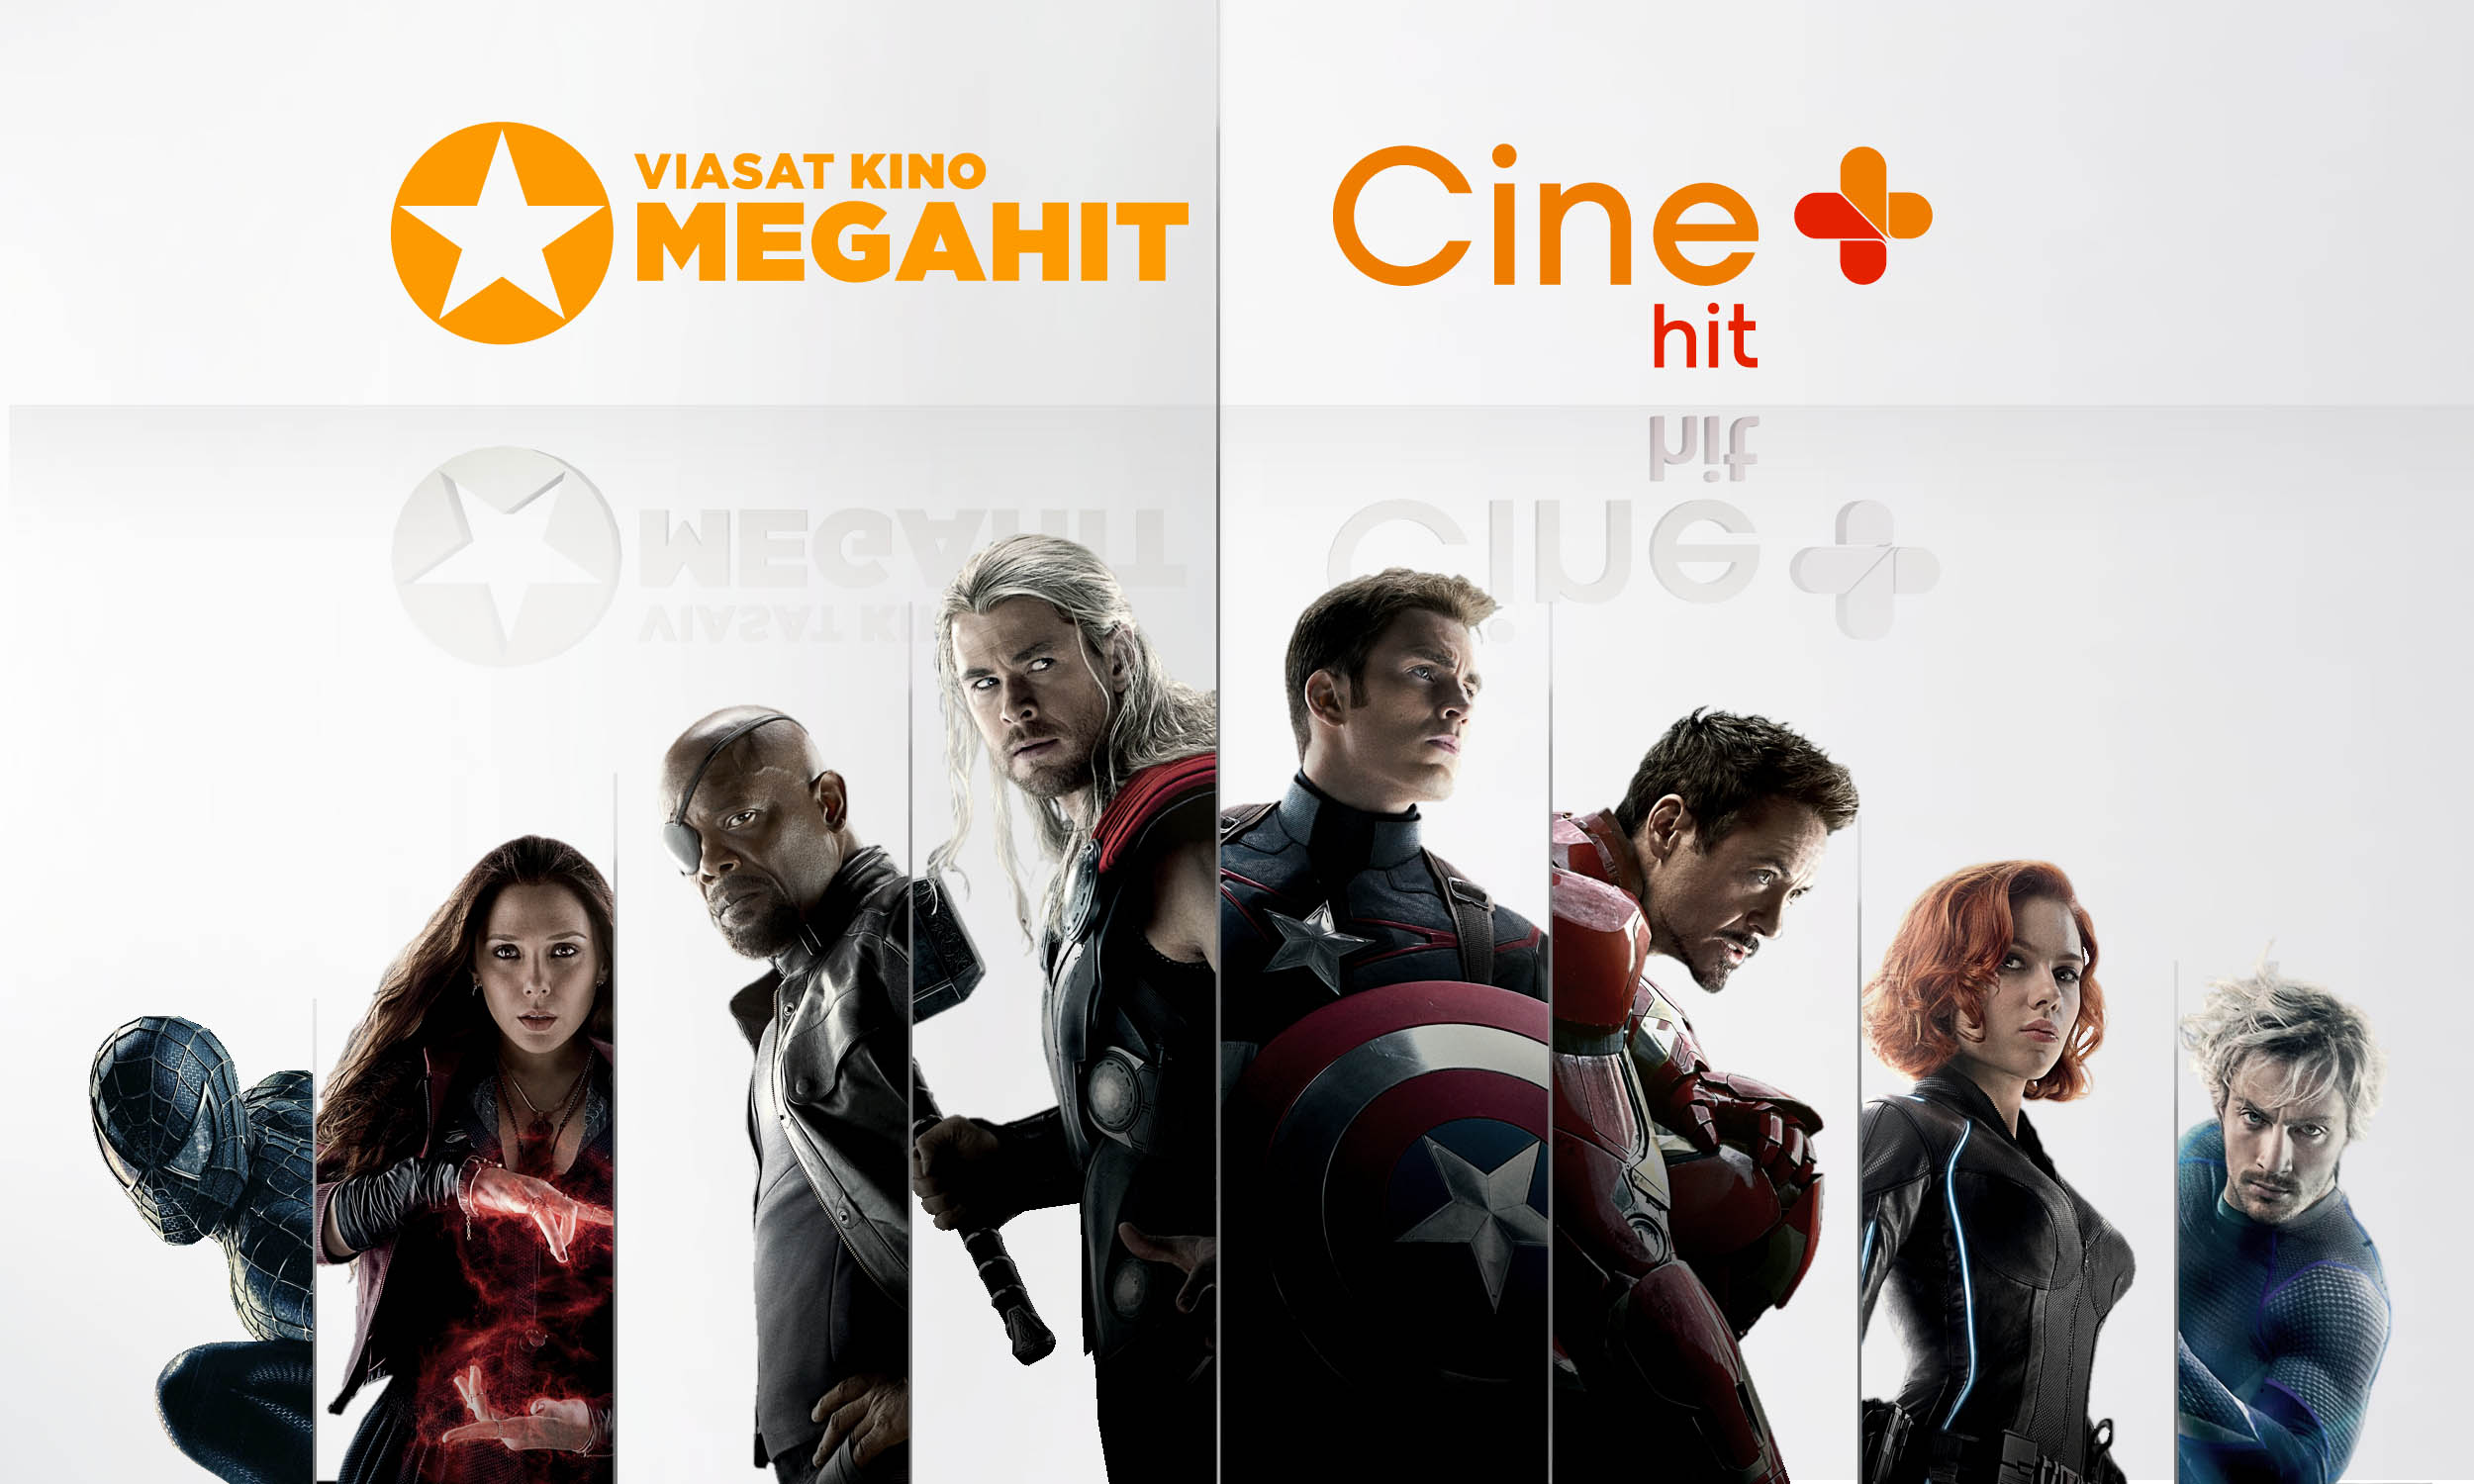 Viasat Kino Megahit vs Cine+ hit